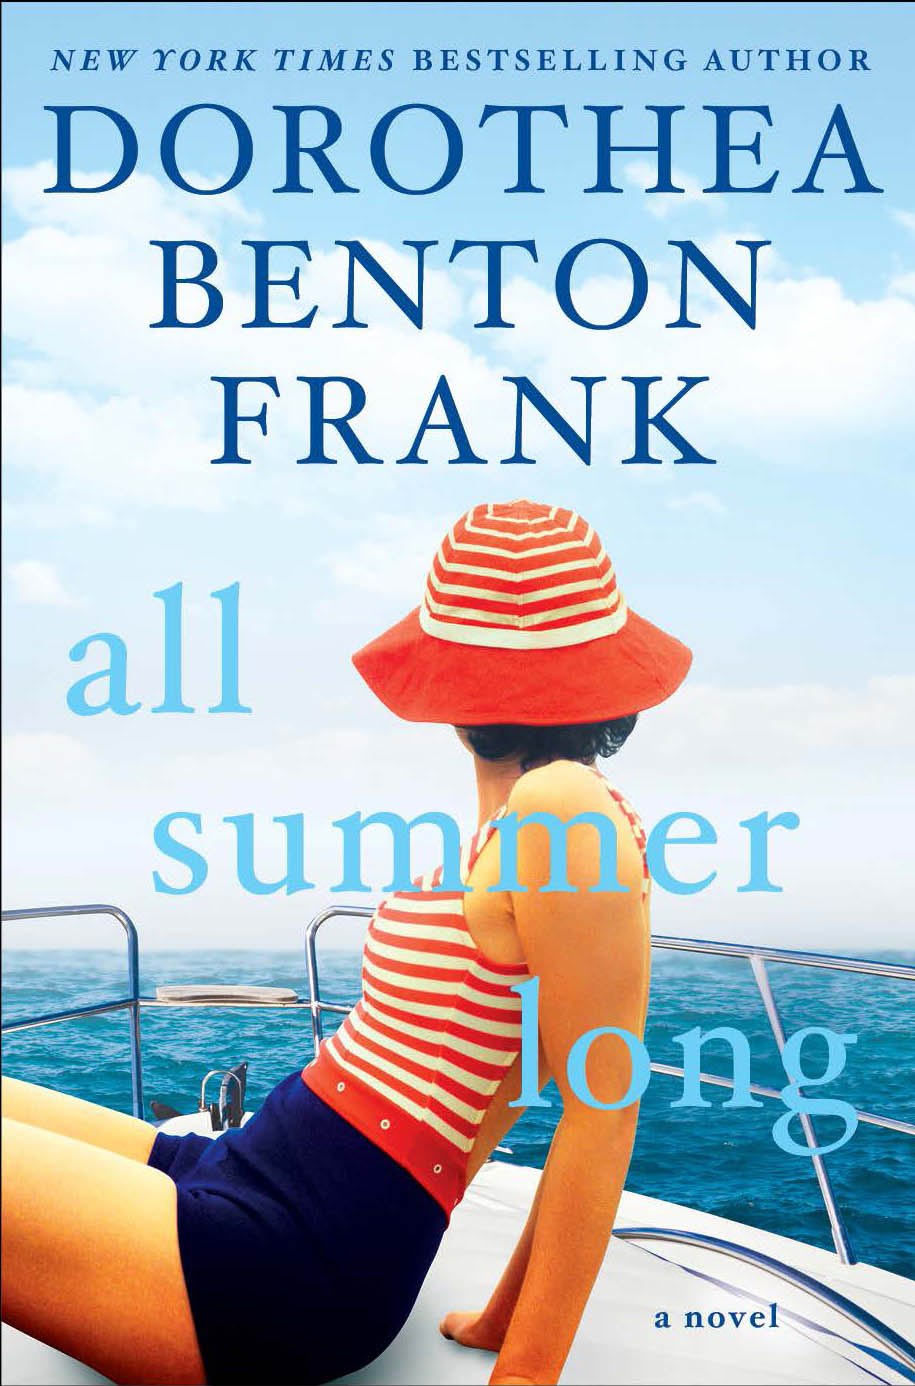 Dorothea Benton Frank – All Summer Long